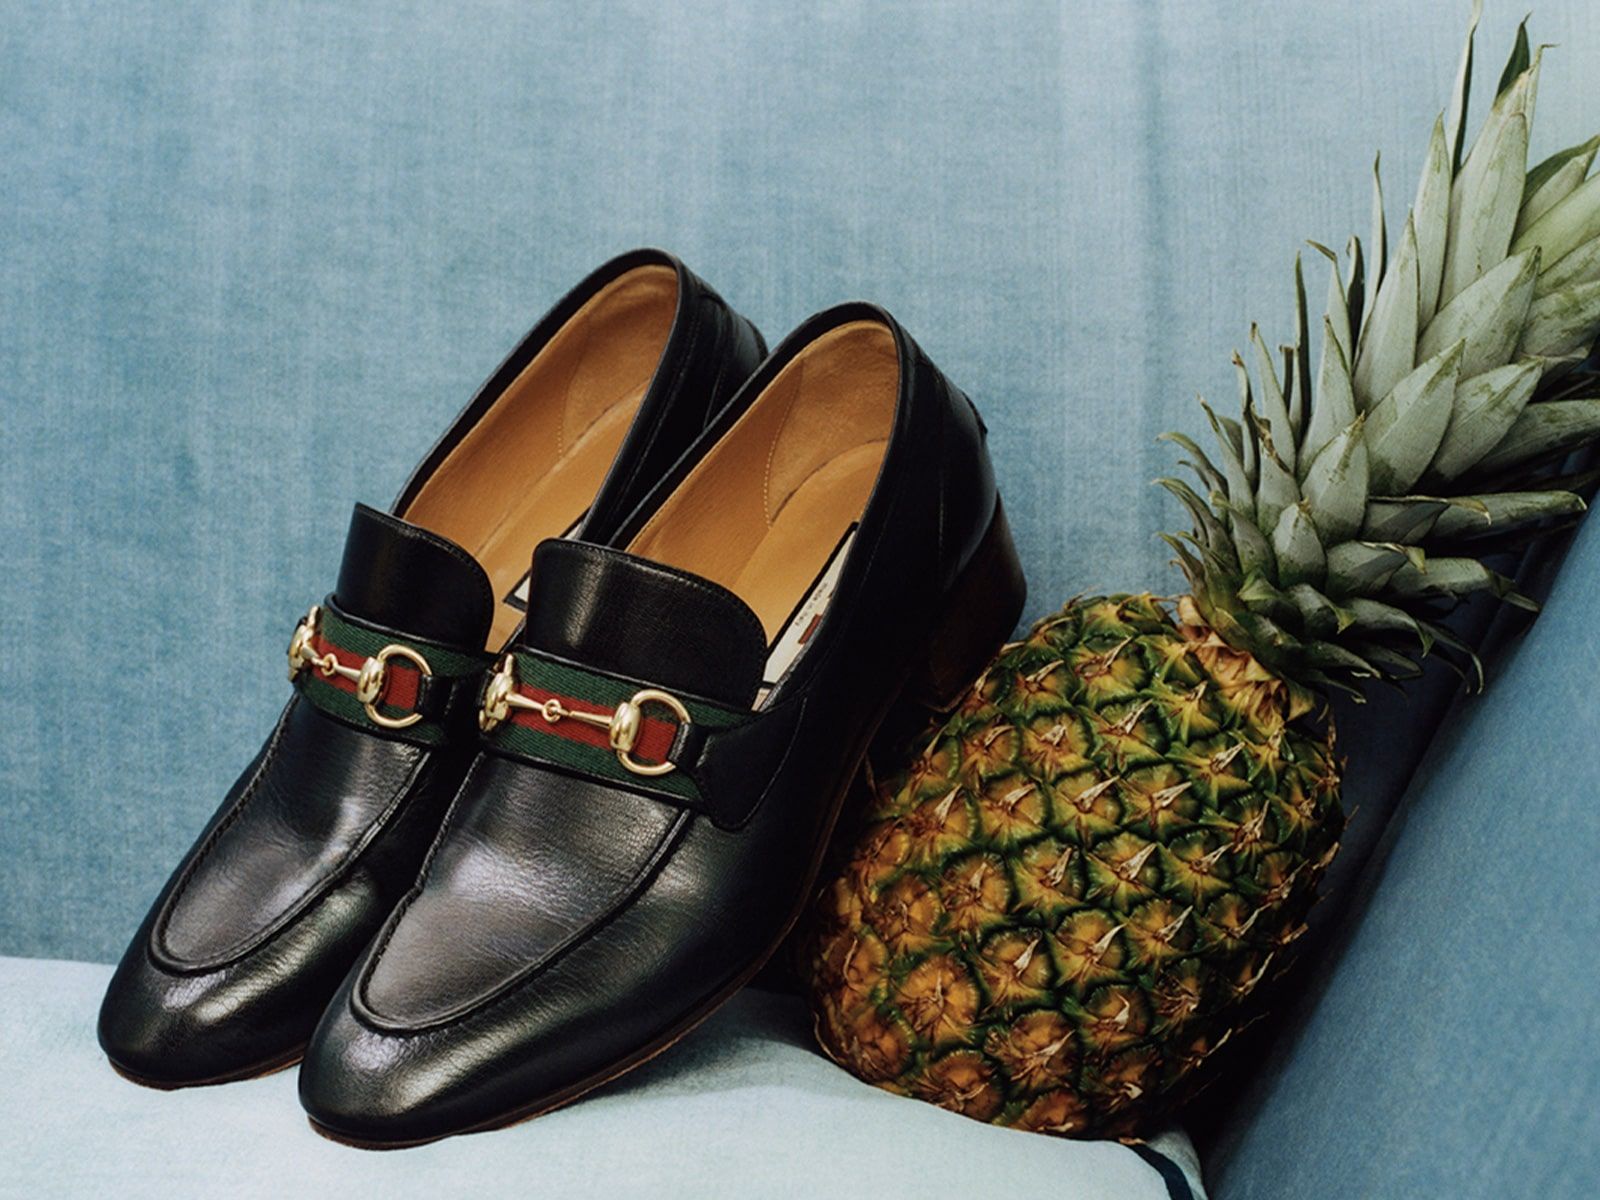 Gucci presenta la colección 'Gucci Pineapple'